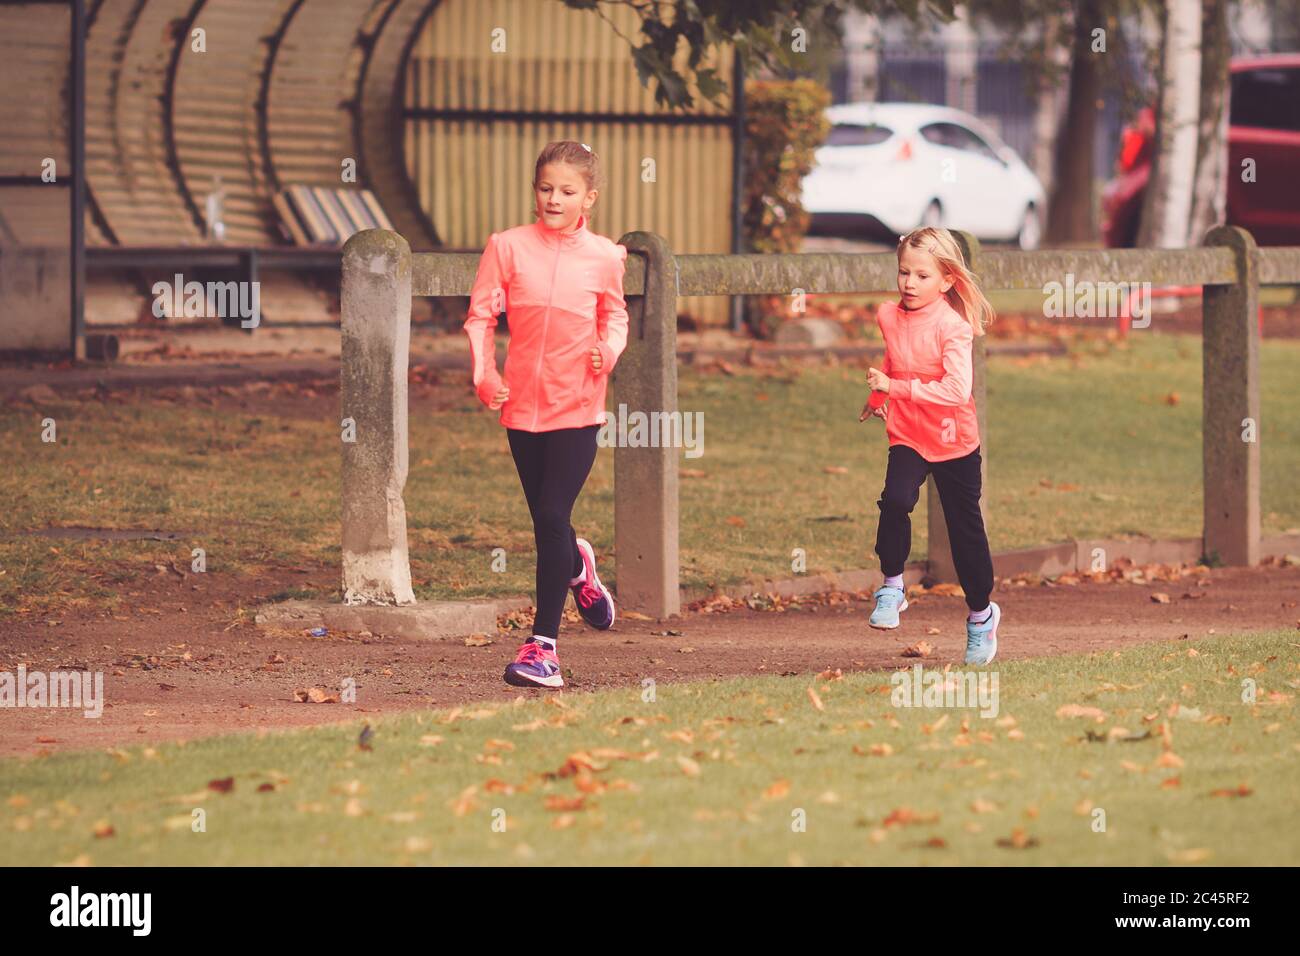 Dos niñas corriendo en la pista de carrera atlética Foto de stock